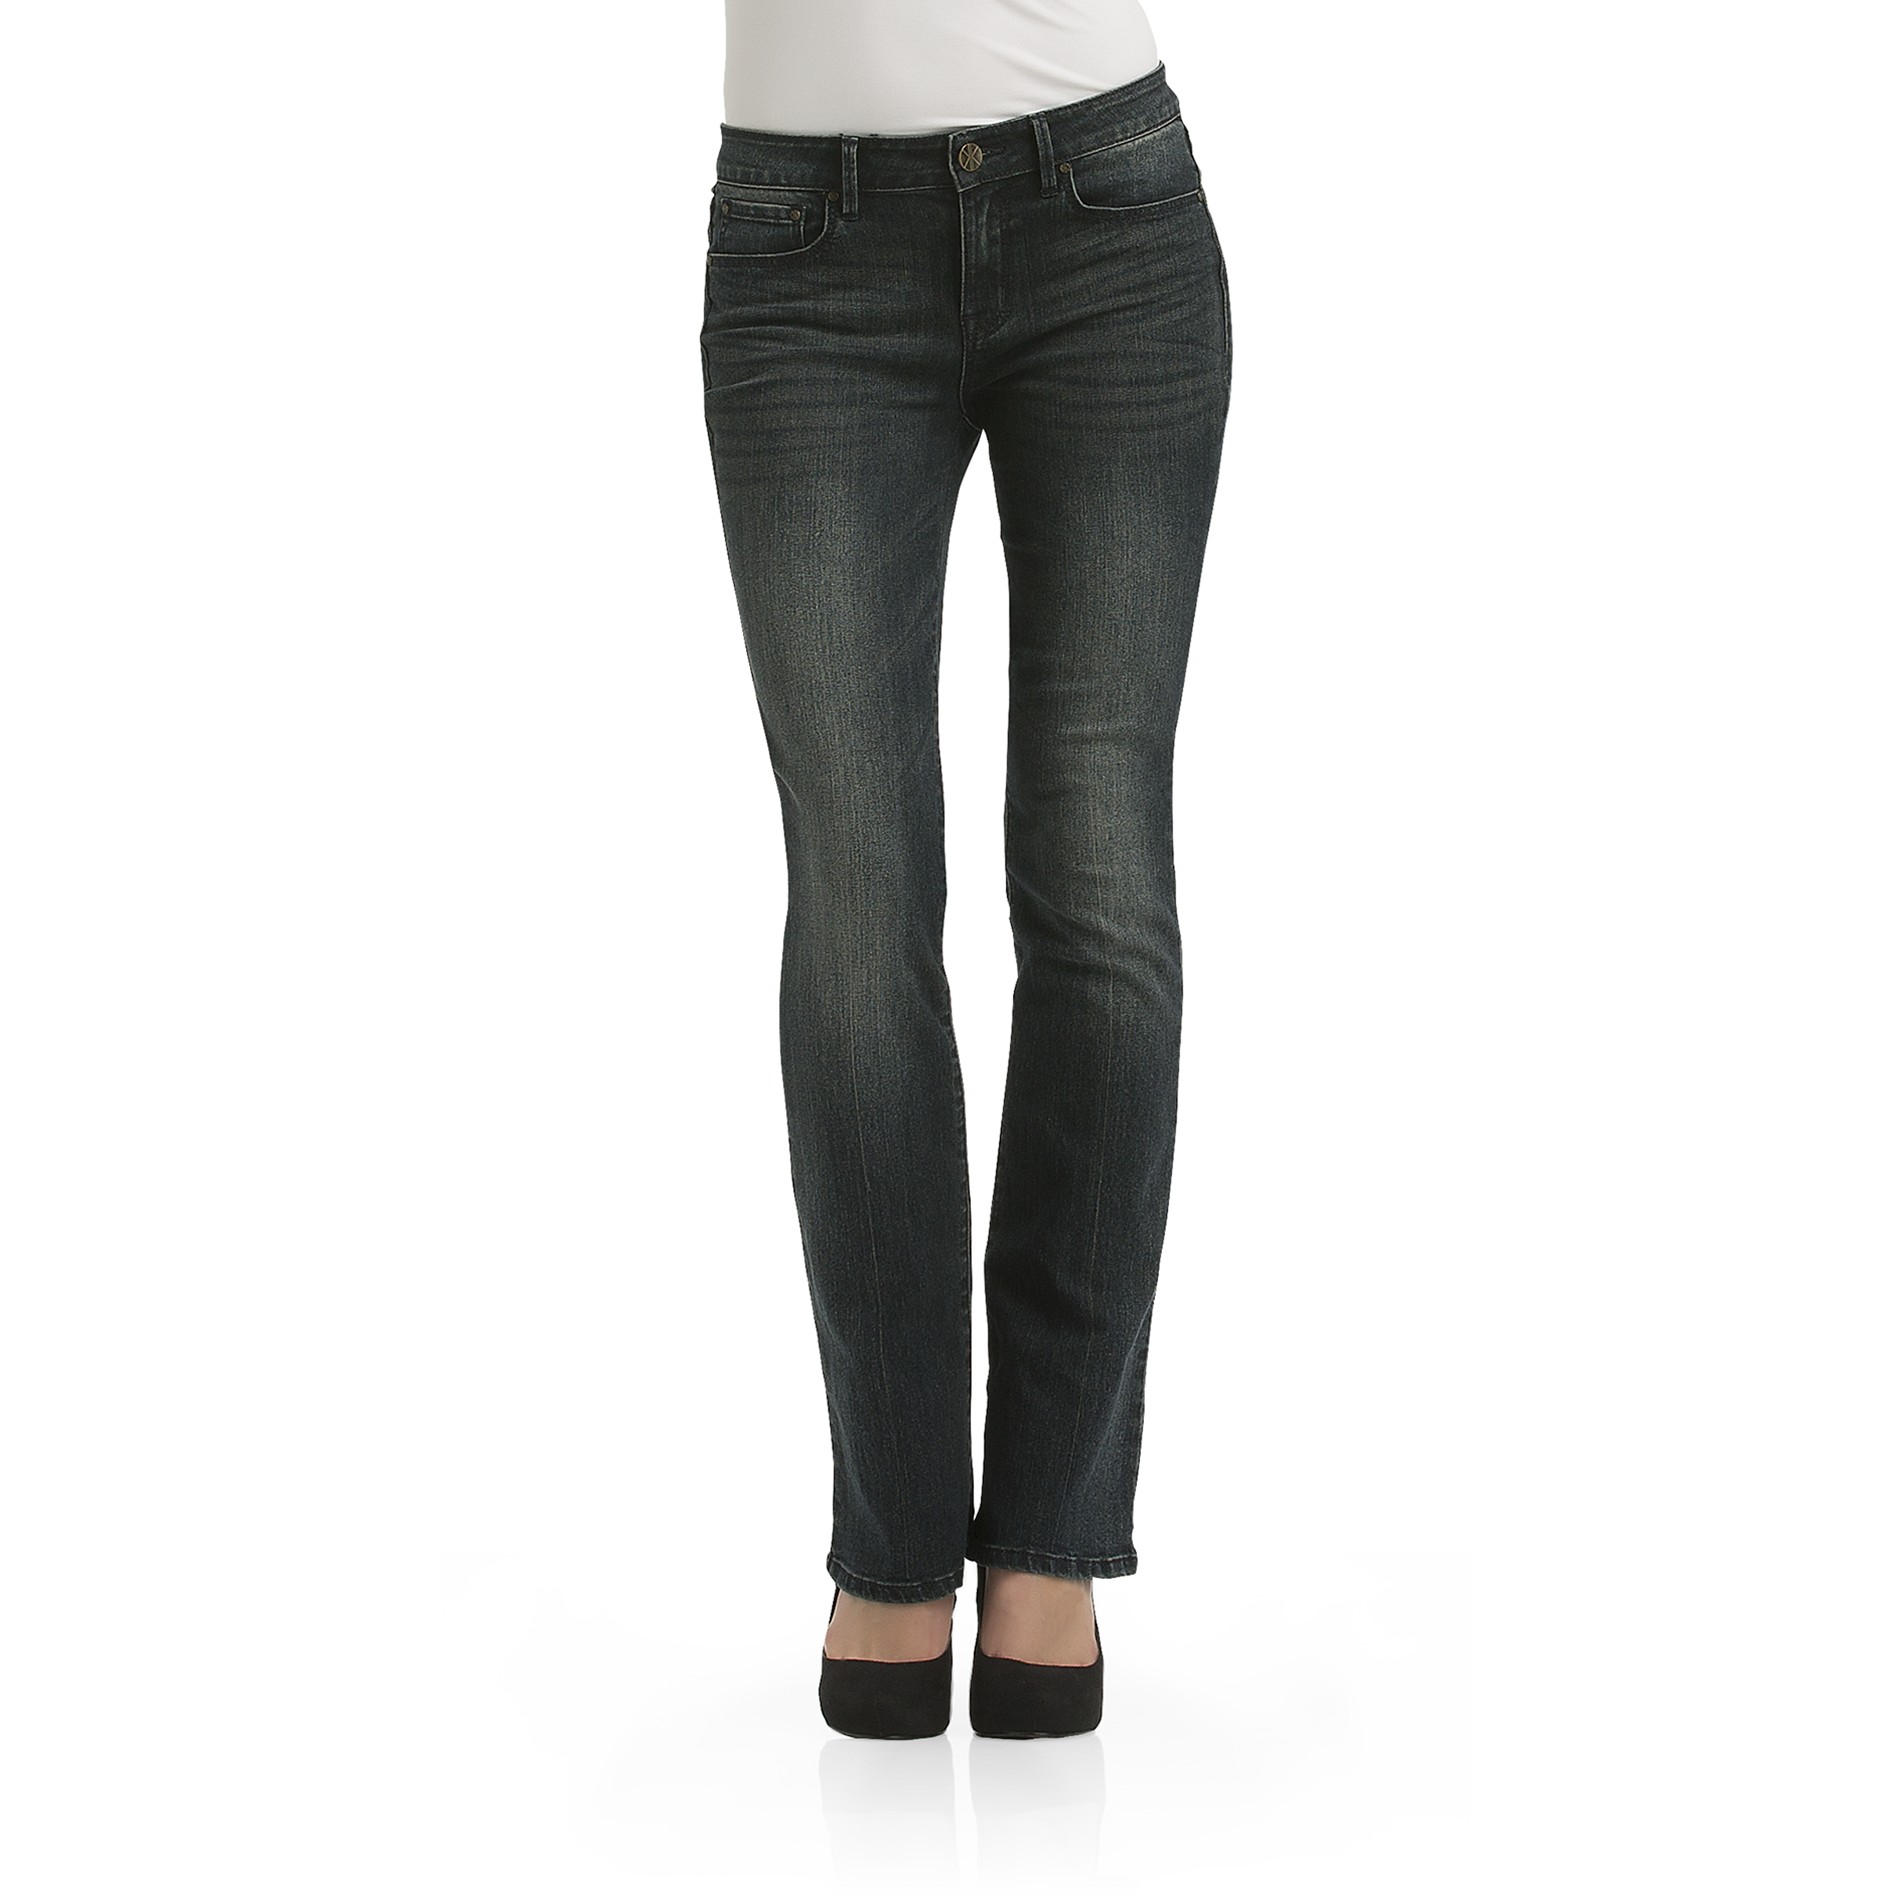 Kardashian Kollection Women's Khloe Curvy Jeans - Slim Bootcut